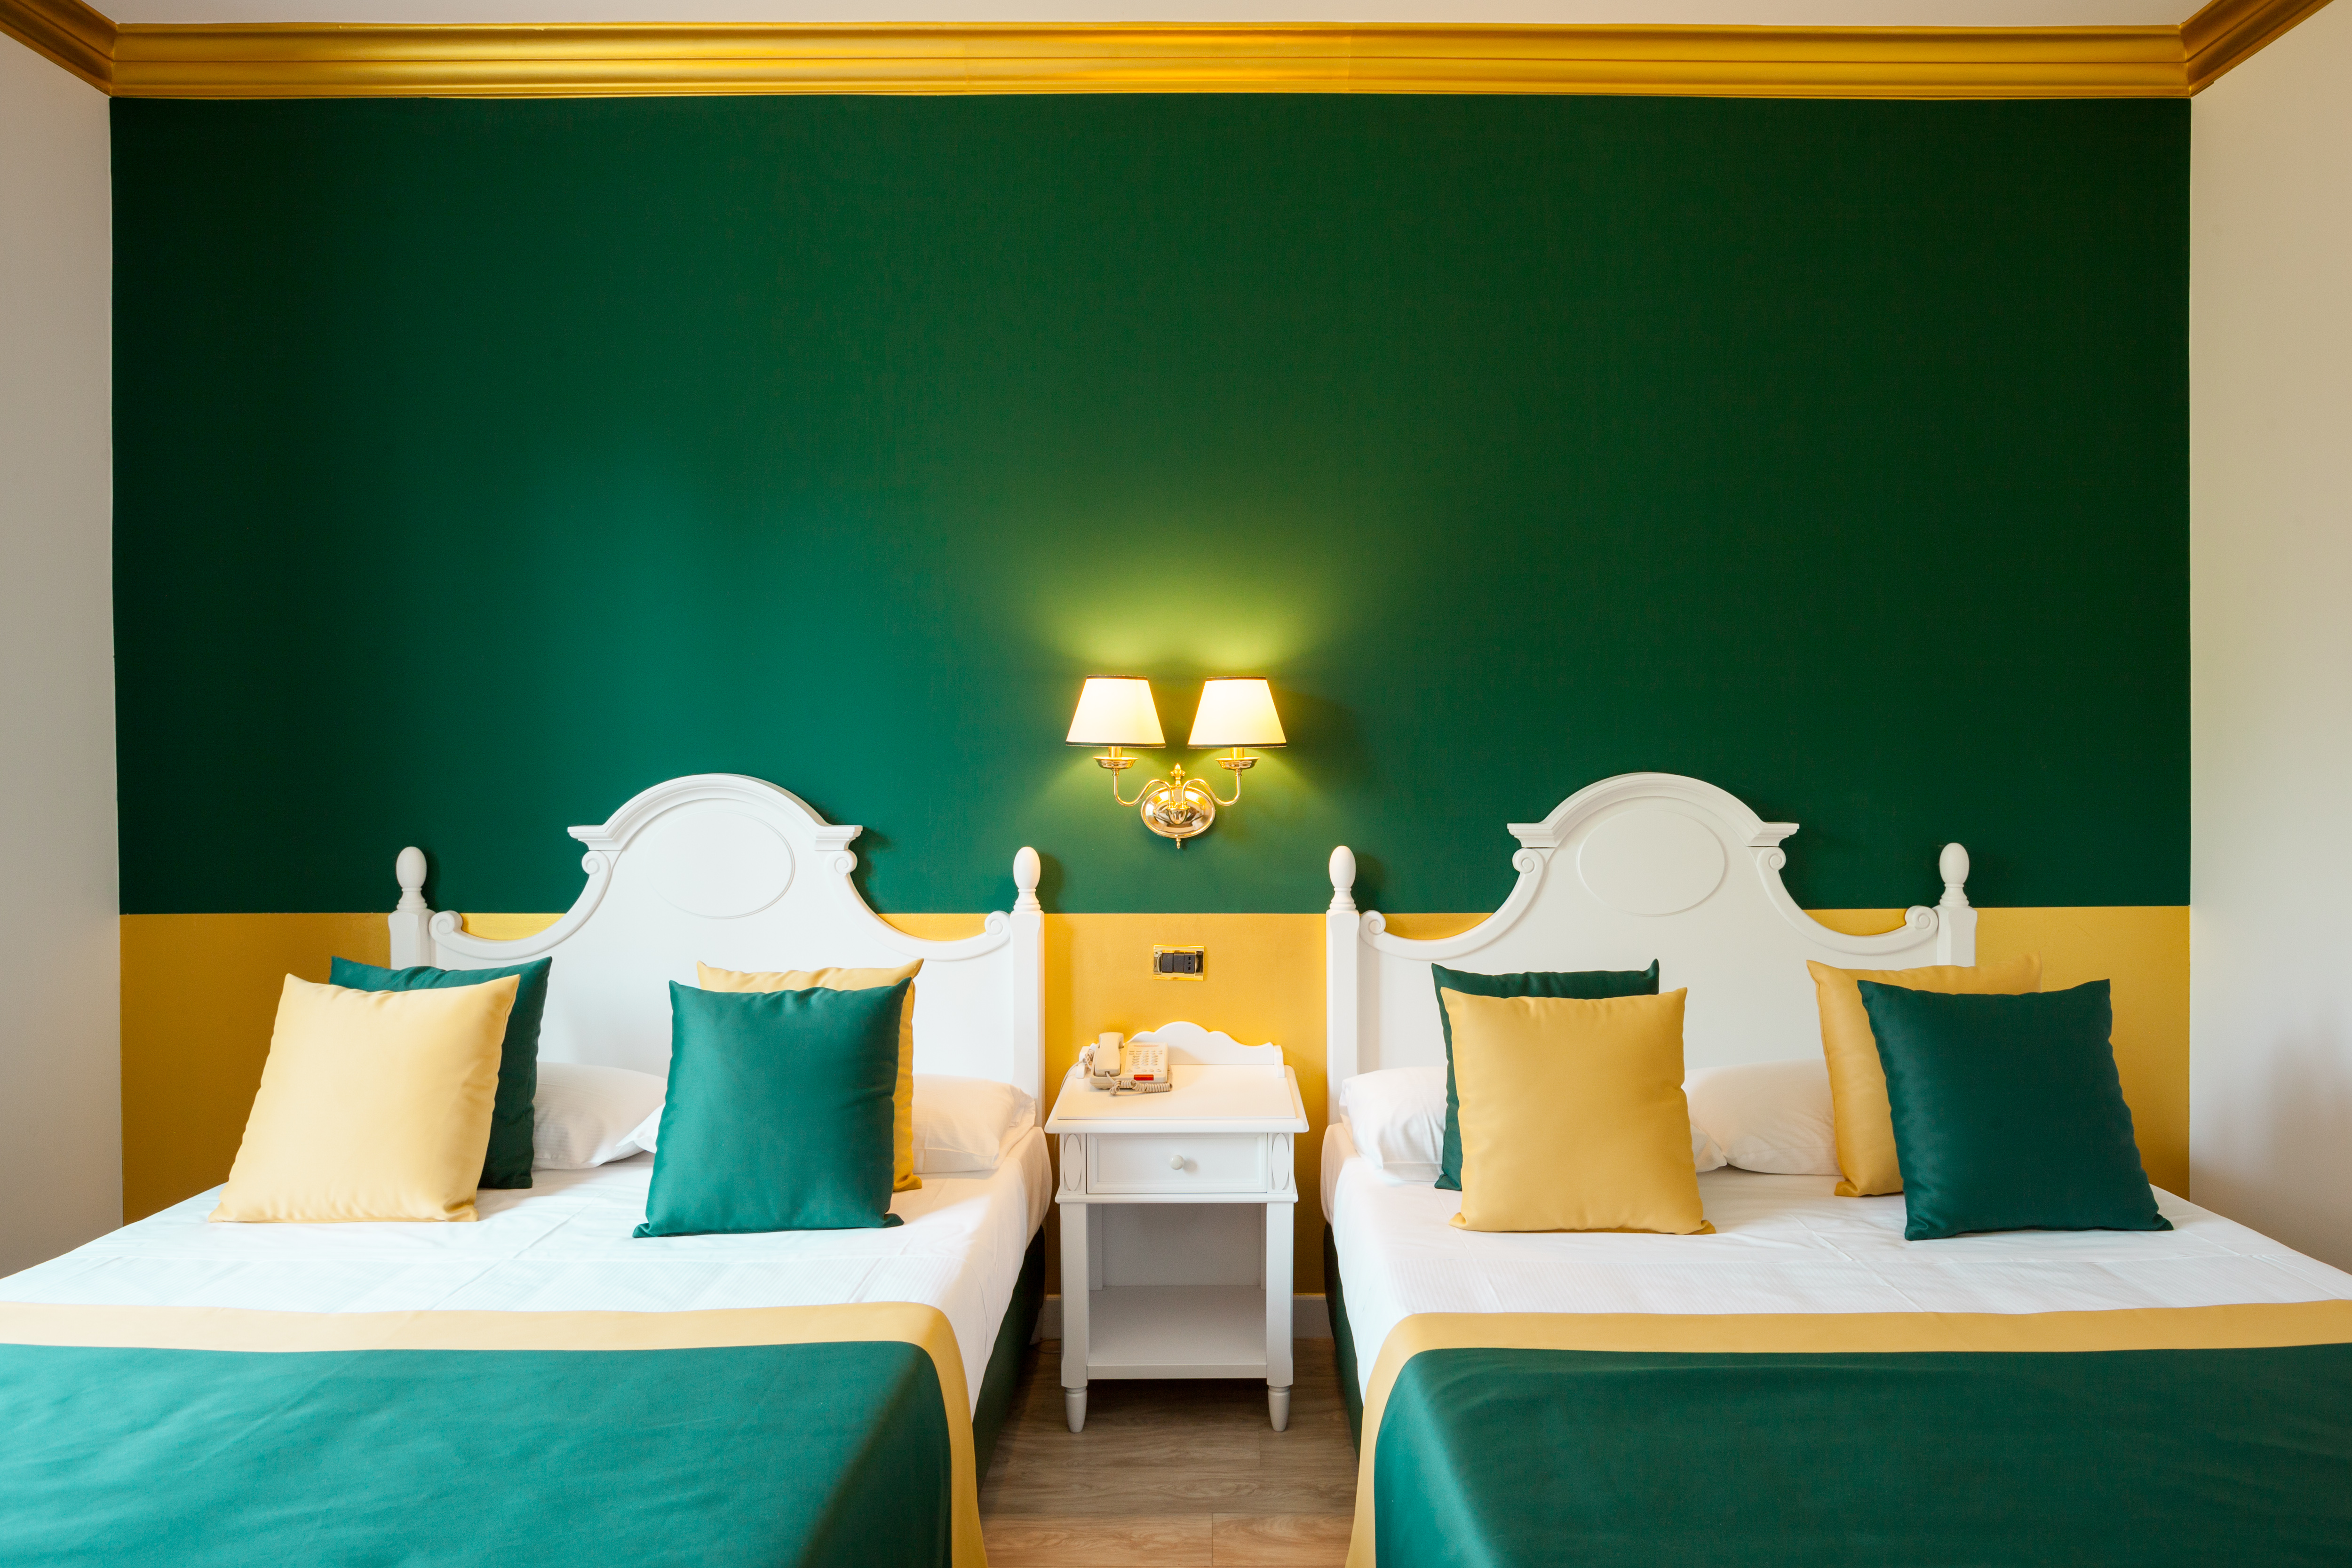 Gardaland Hotel - Classic-Vierbett-Familienzimmer - französische Betten